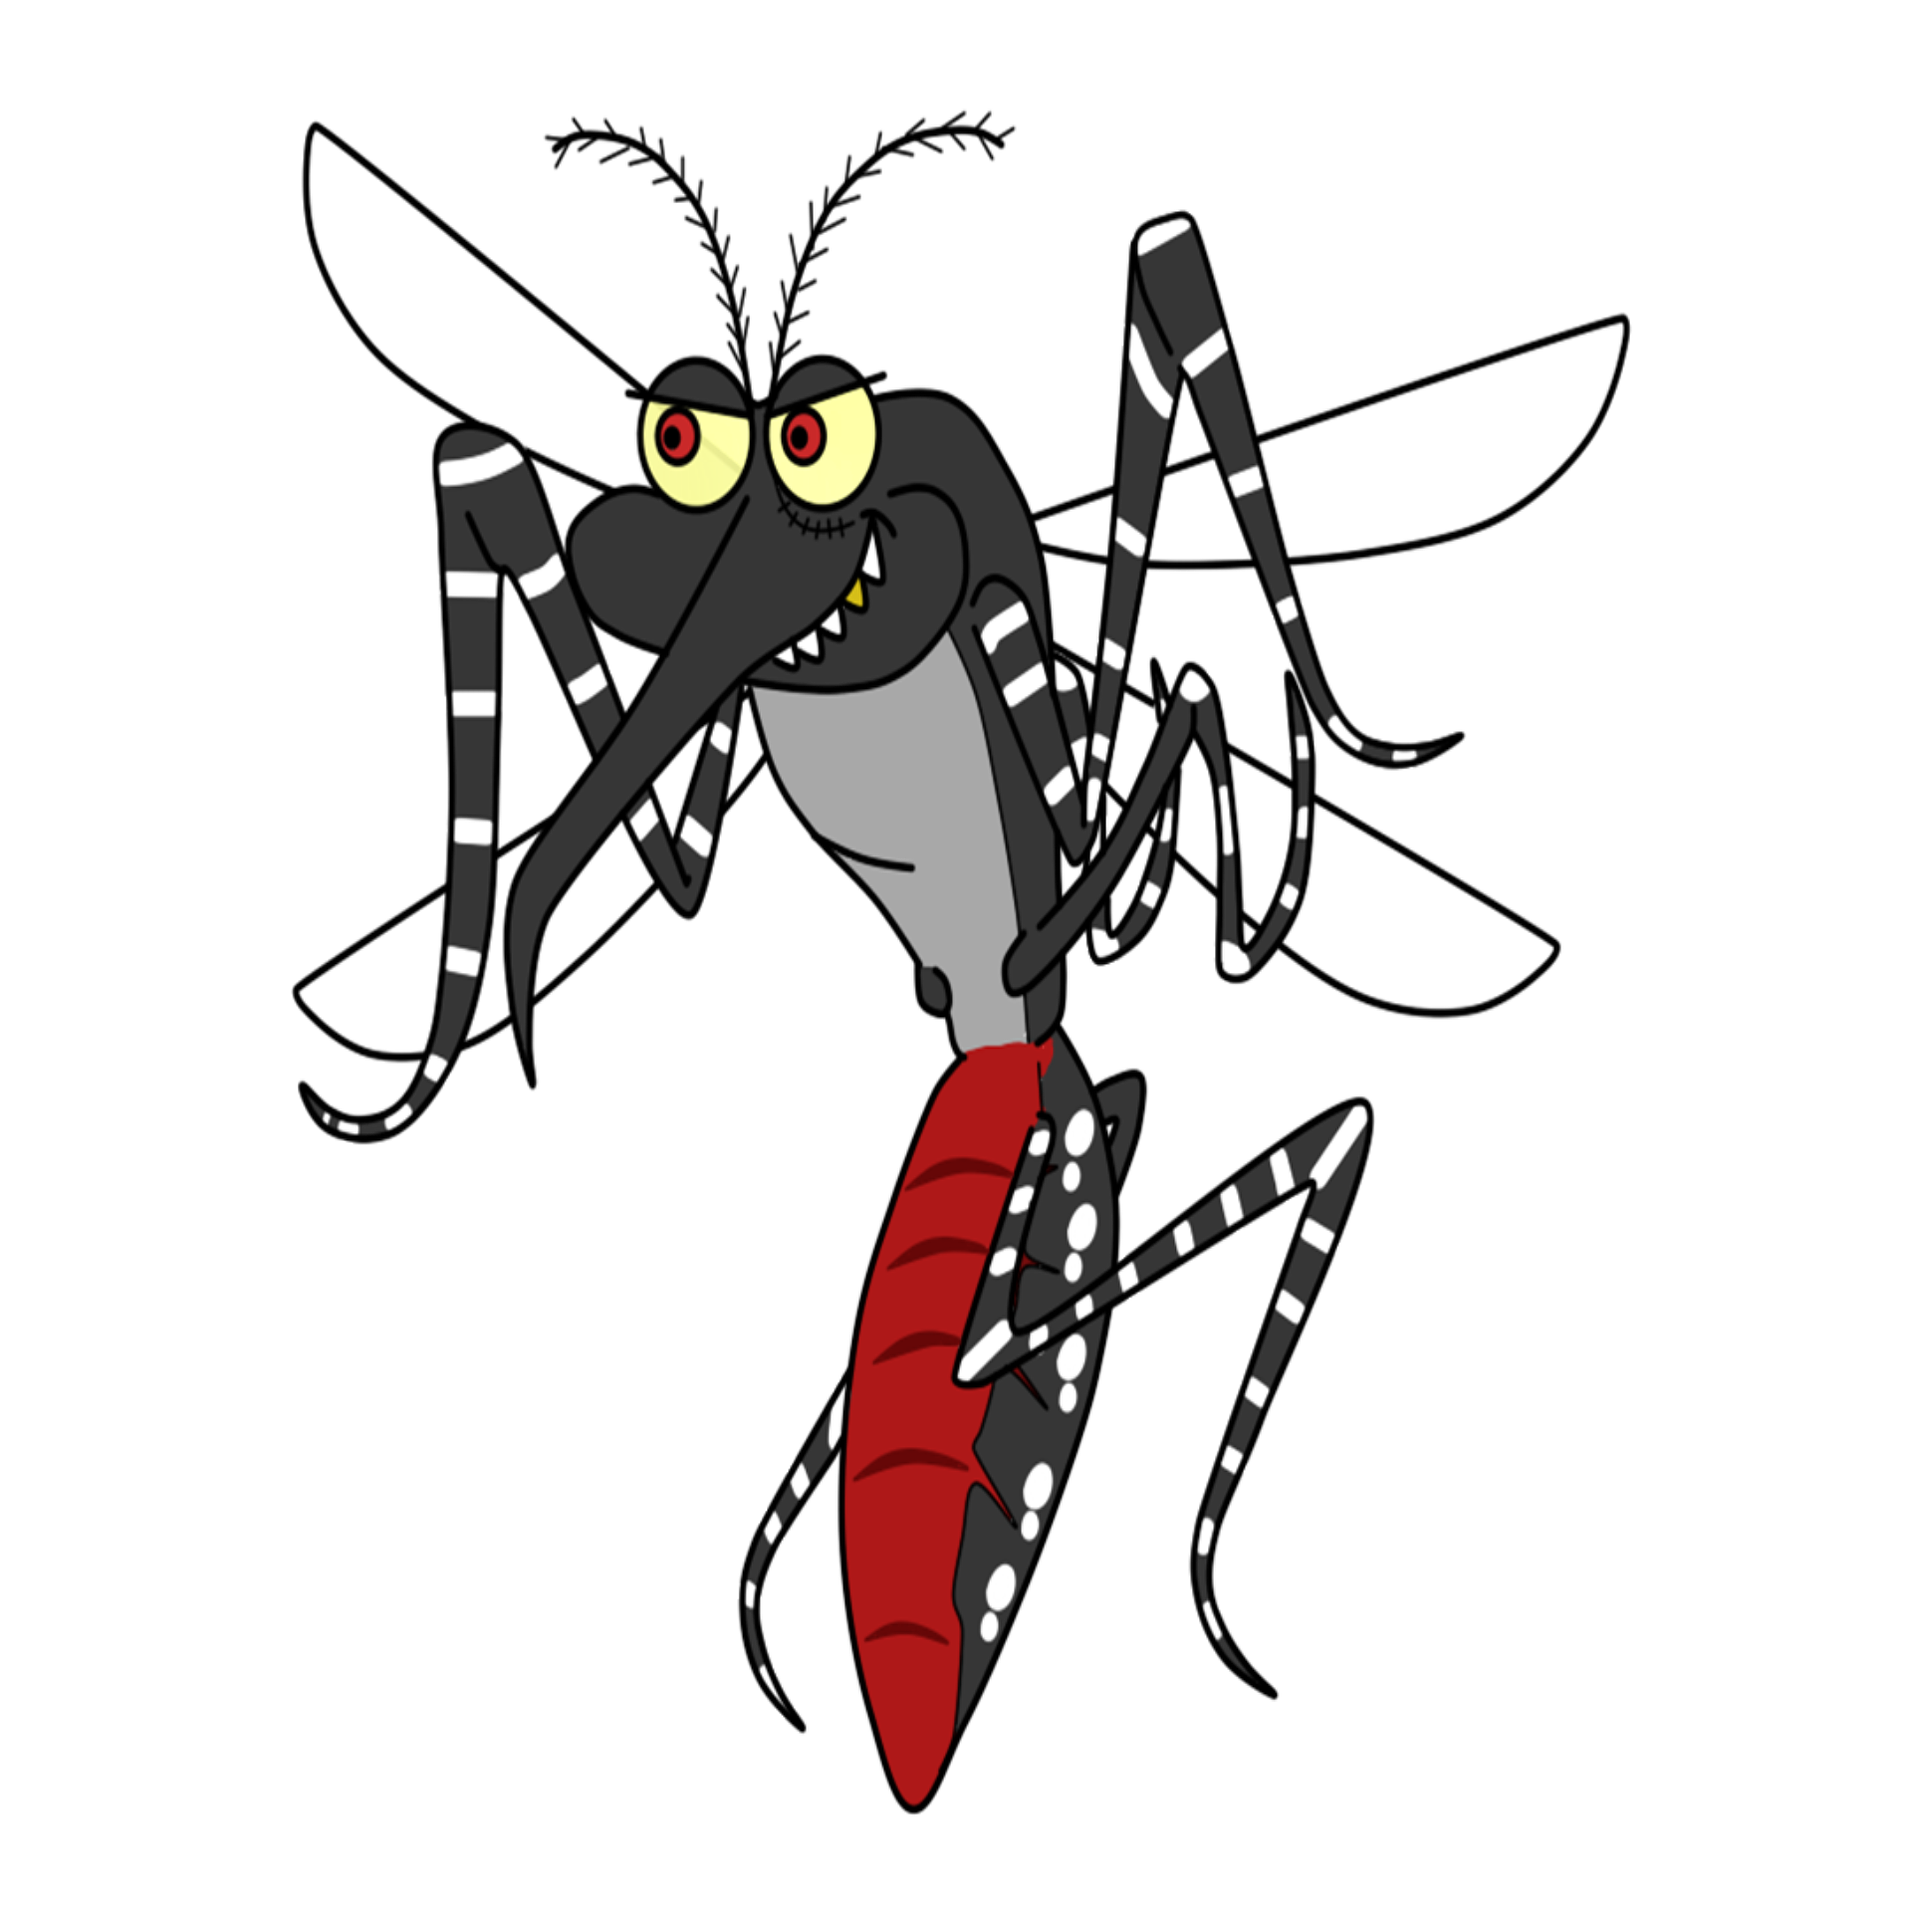 Exército vão participar de mutirão dia 25 em combate ao Aedes Aegypti